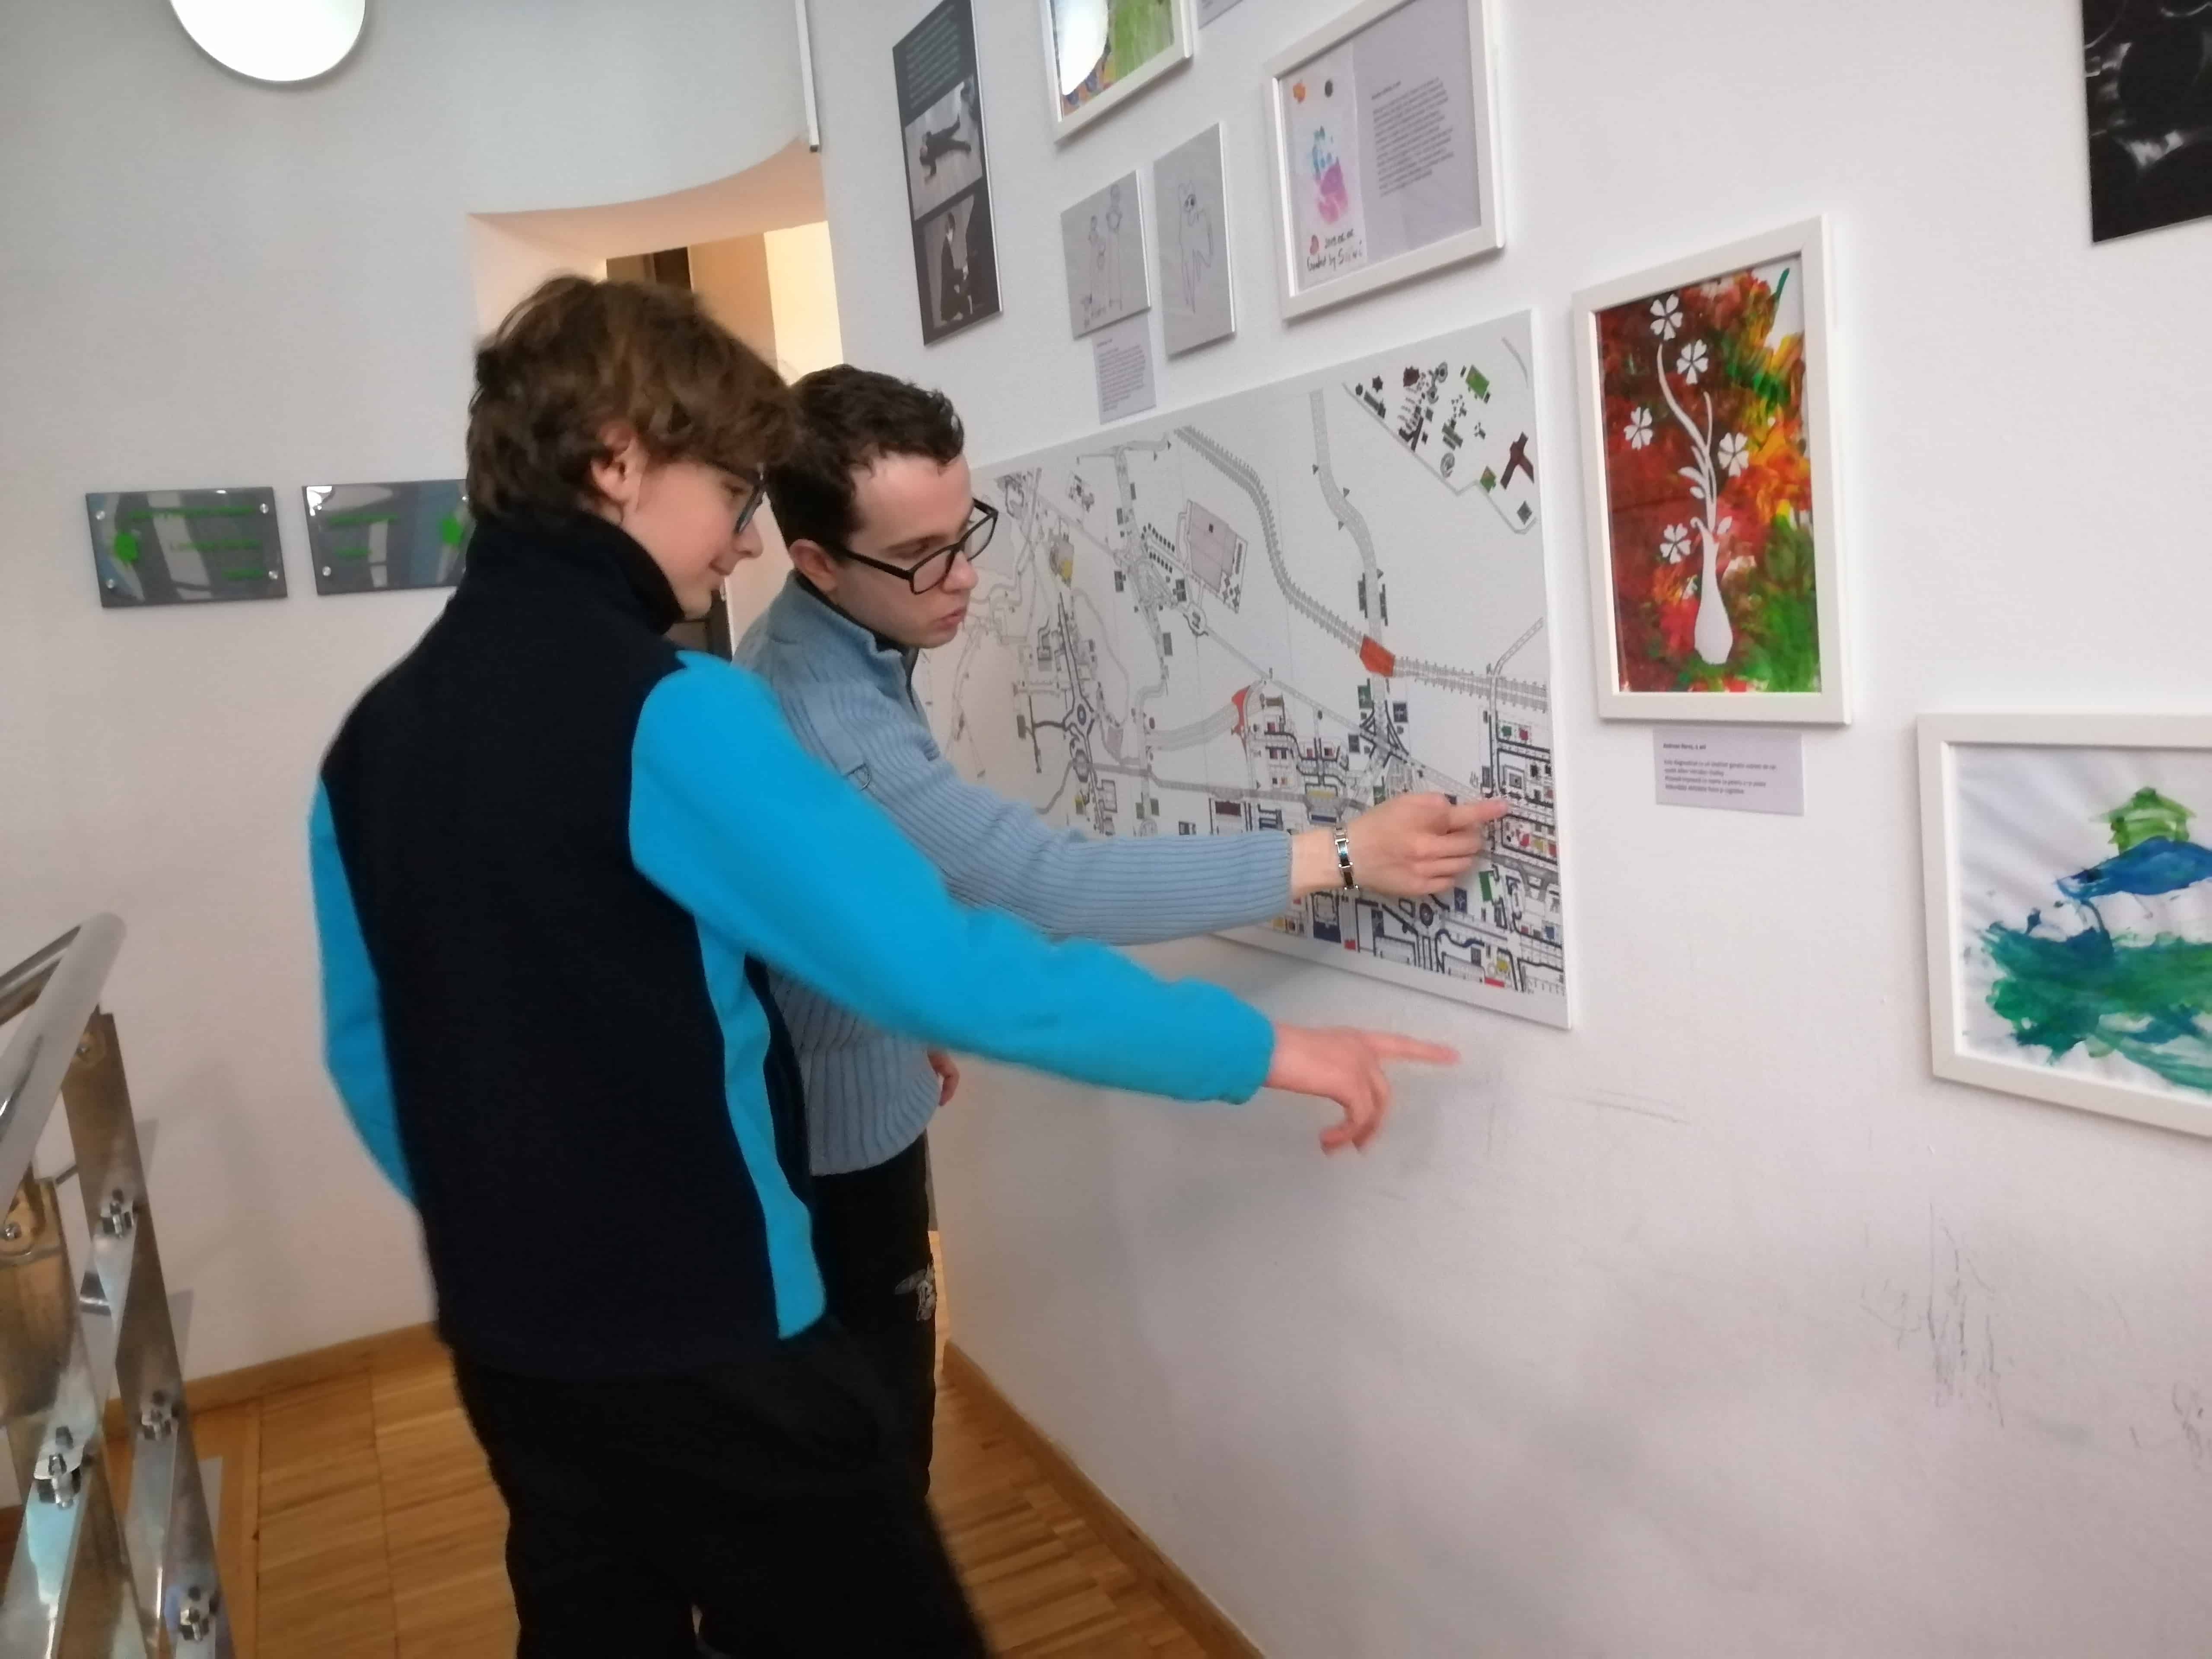 doi băieți adolescenți privesc o lucrare de grafică expusă pe perete. Lucrarea reprezintă harta orașului Brăila, amândoi zâmbesc și urmăresc cu degetul informațiile de pe desen